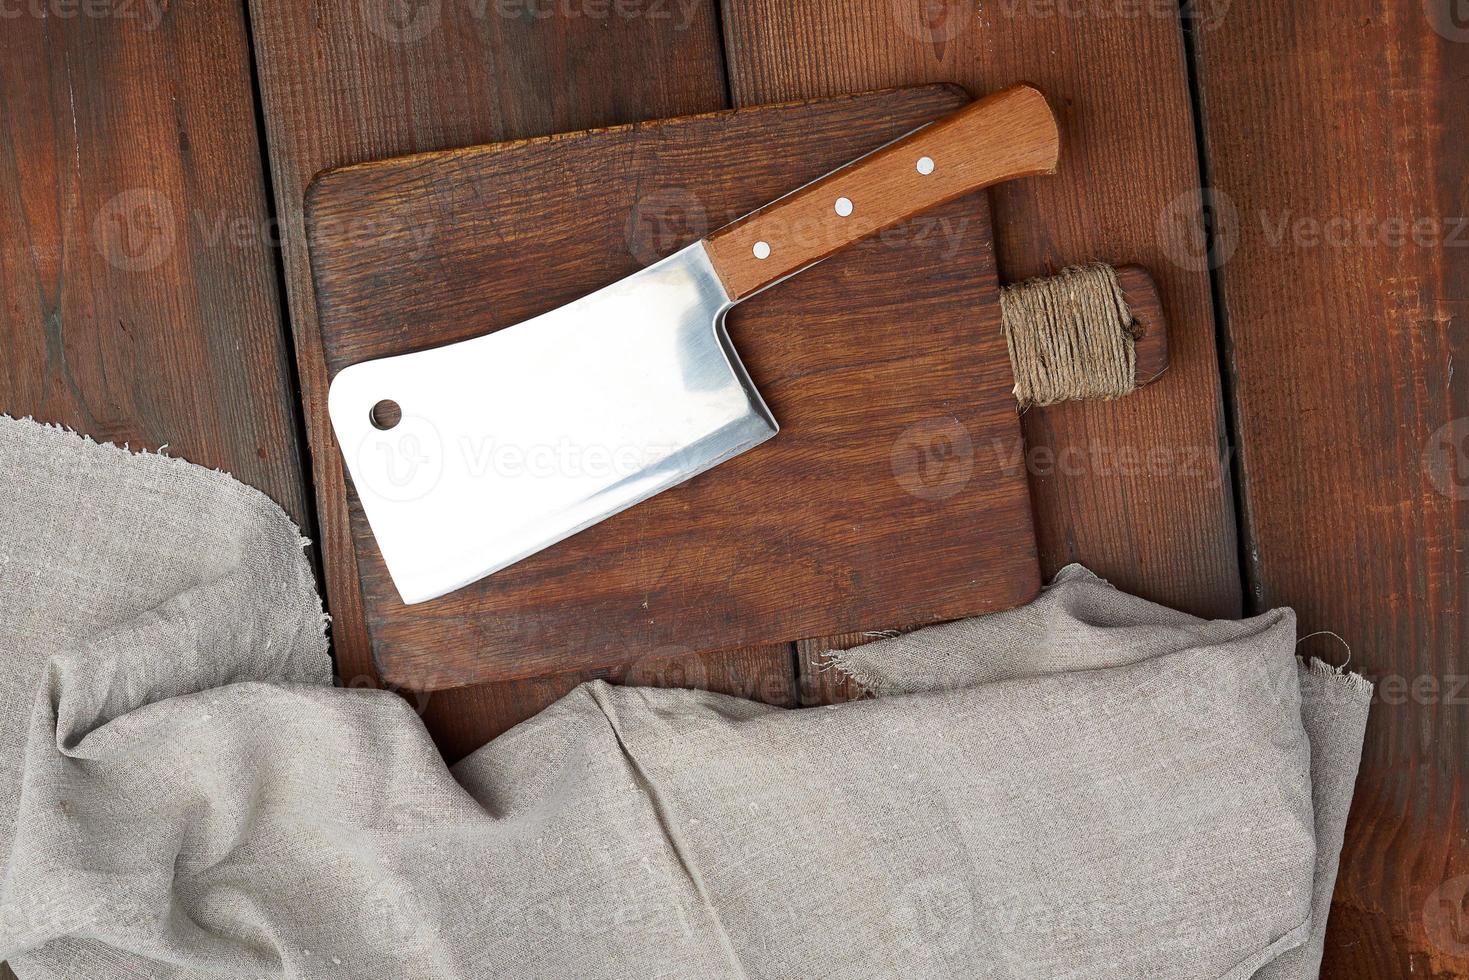 Ein großes scharfes Fleischmesser aus Stahl liegt auf einem rechteckigen braunen Holzbrett foto